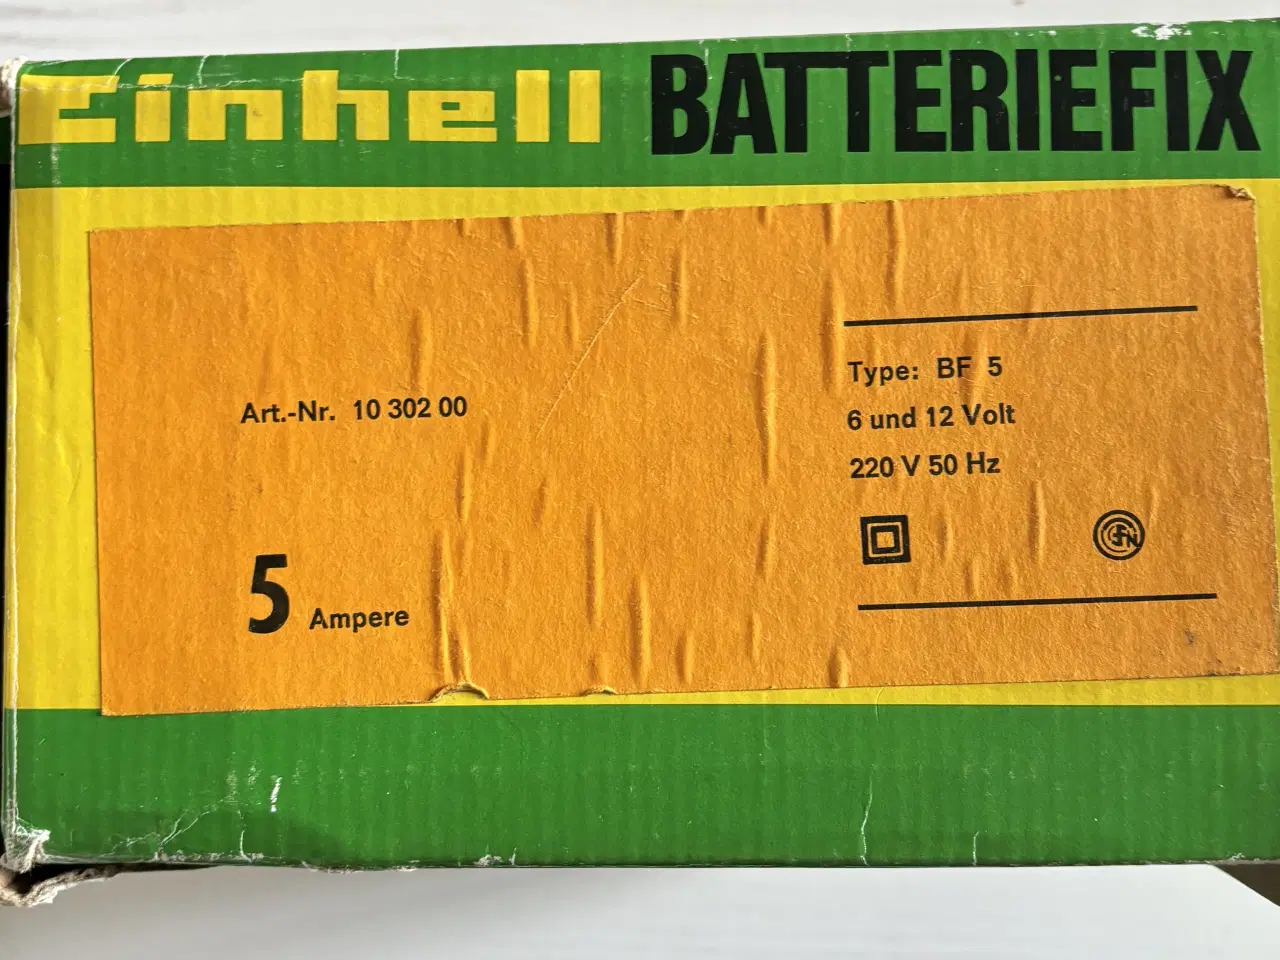 Billede 2 - Batterilader, Einhell batteriefix